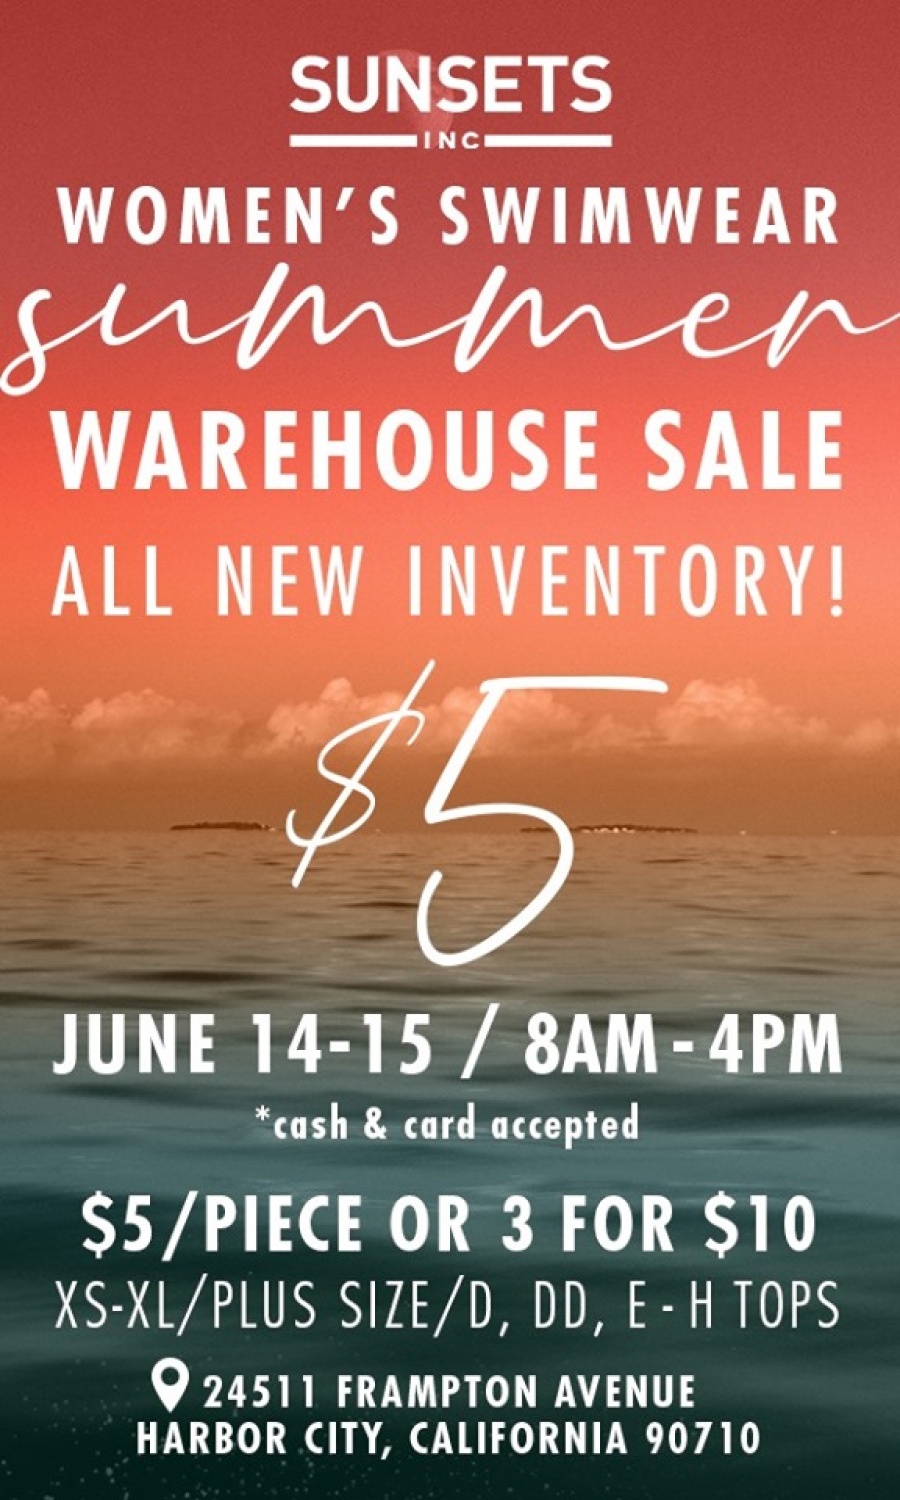 Women's Swimwear Warehouse Sale